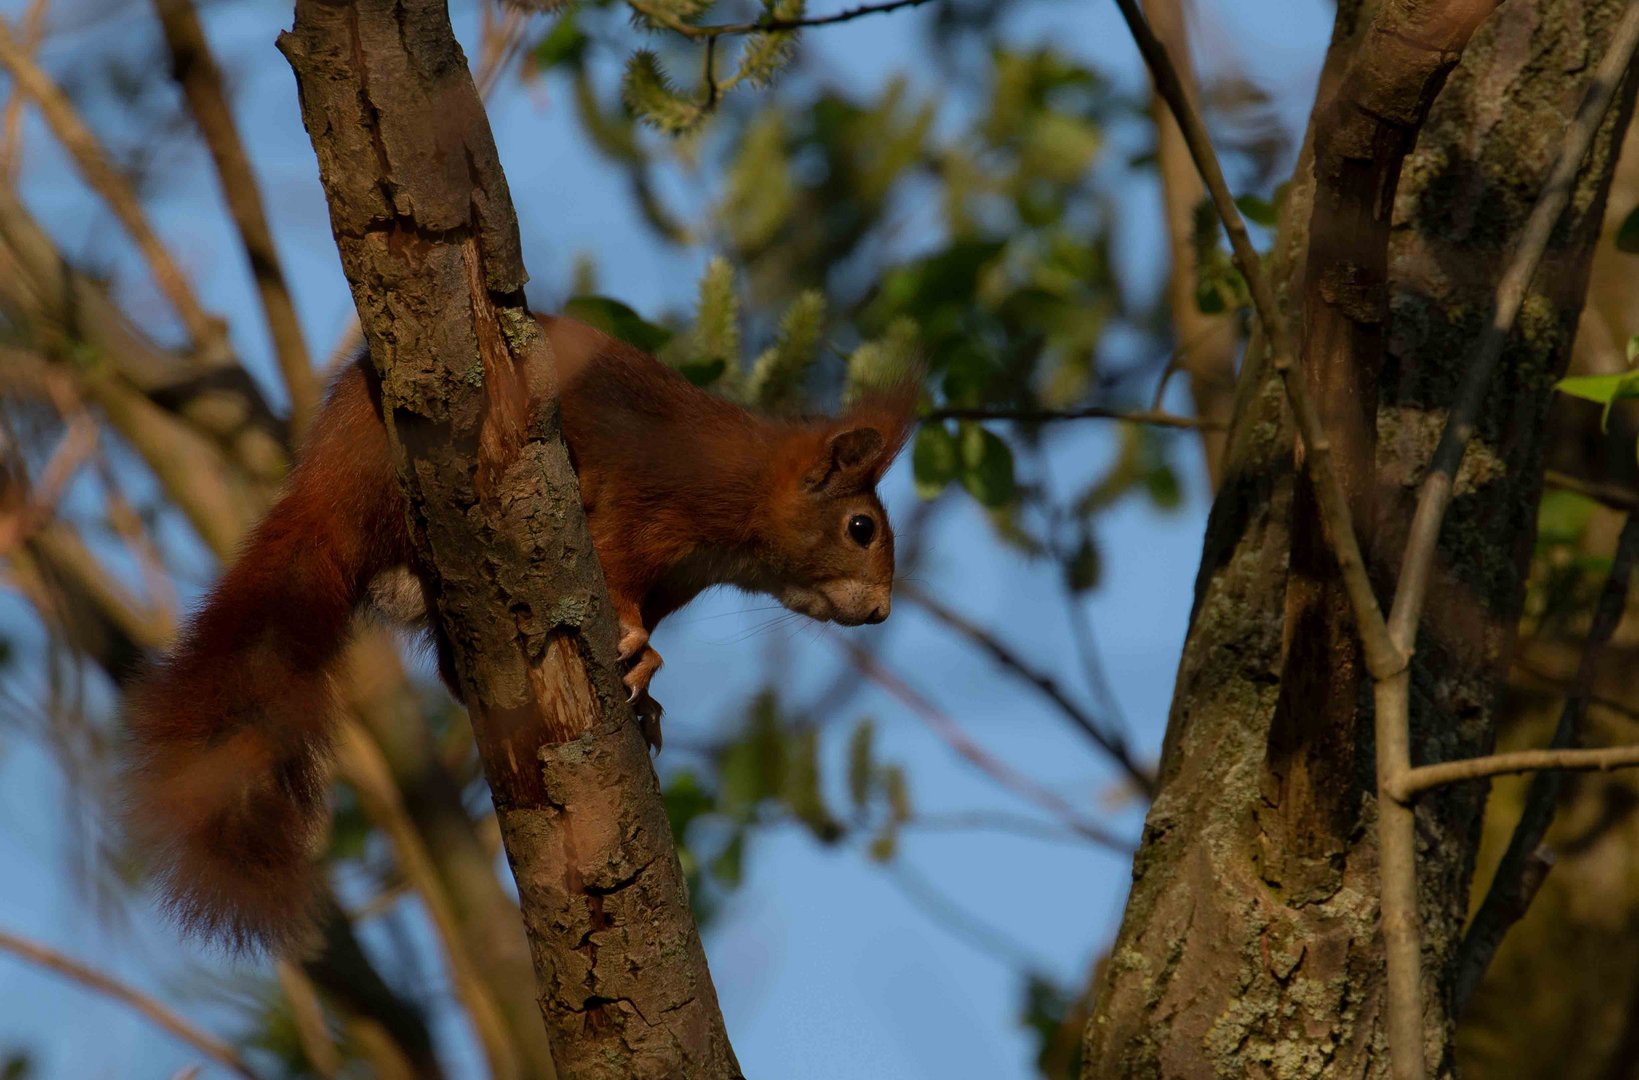 Eichhörnchen genießen den sonnigen Tag